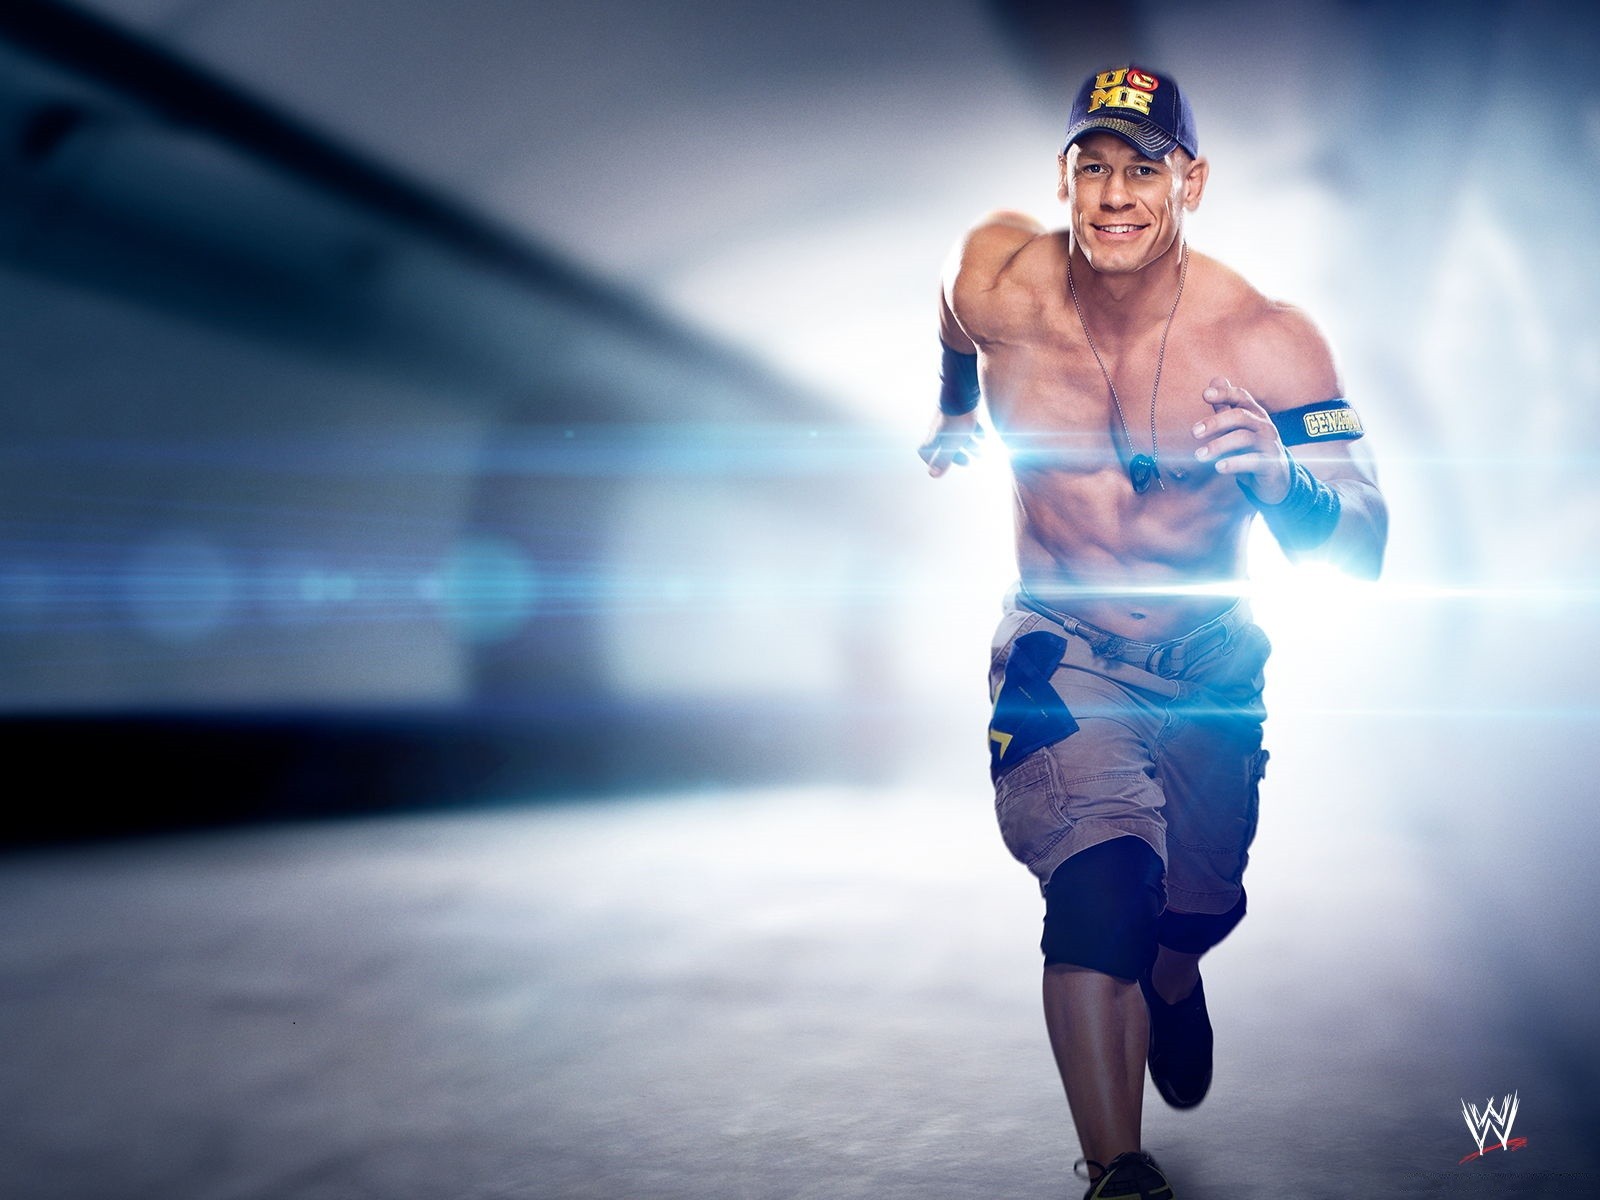 John, Cena, Wide, Hd, Wallpaper, Free, Desktop, Images, - Wwe John Cena Wwe Champion 2014 - HD Wallpaper 